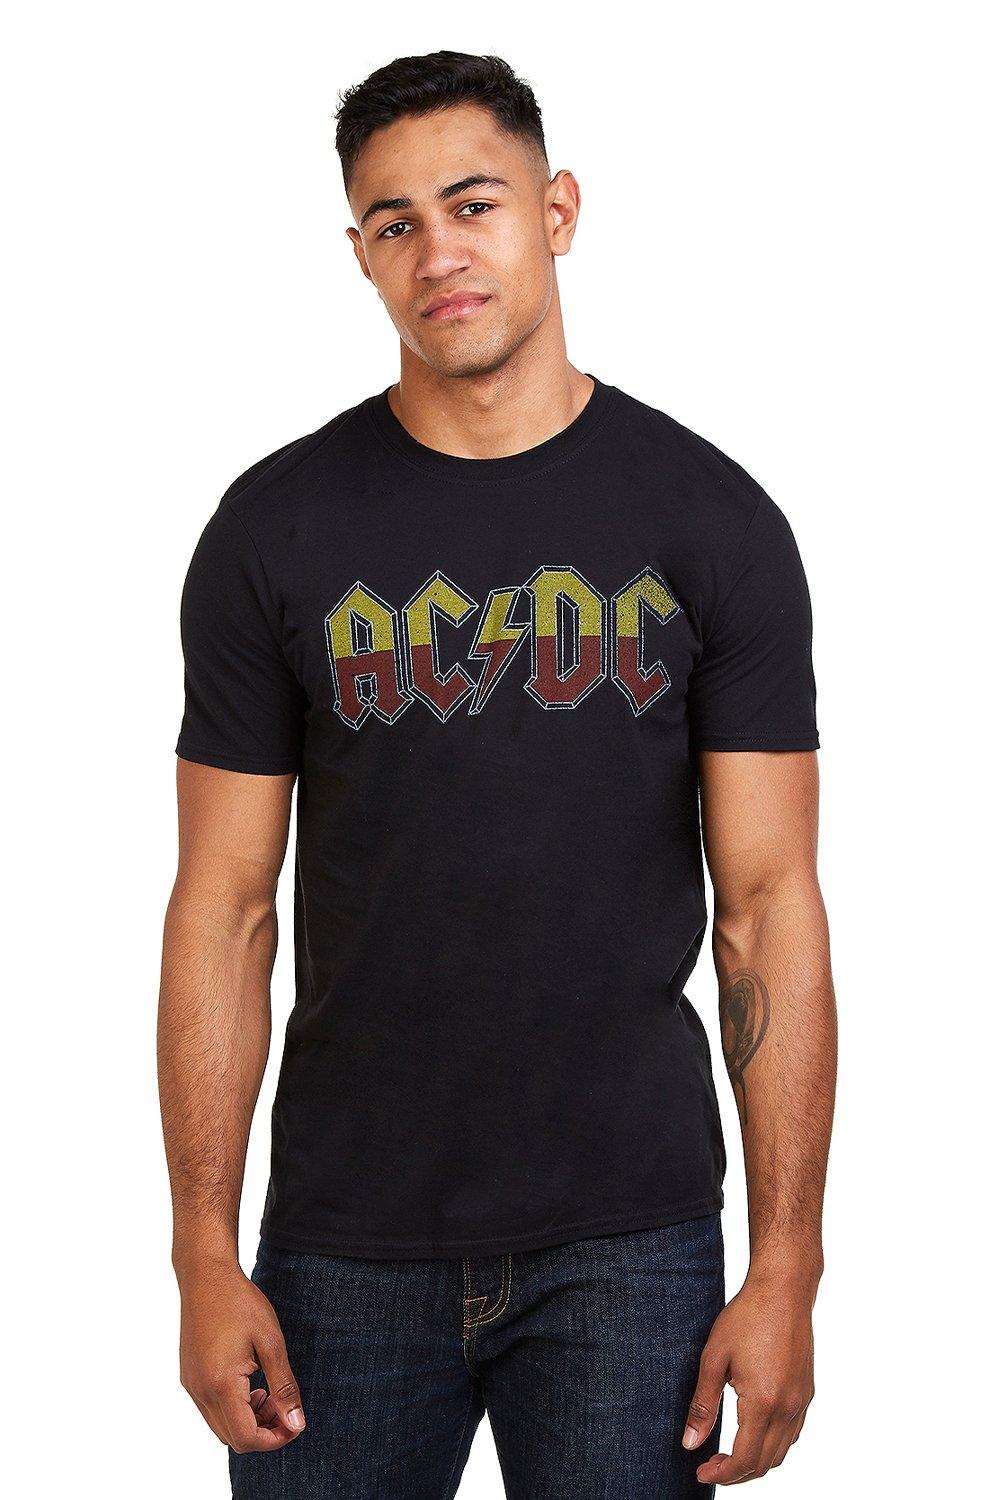 Хлопковая футболка About To Rock Tour AC/DC, черный популярная музыкальная рок группа ac dc памятная монета из сплава настольное украшение поделки фотоподарок